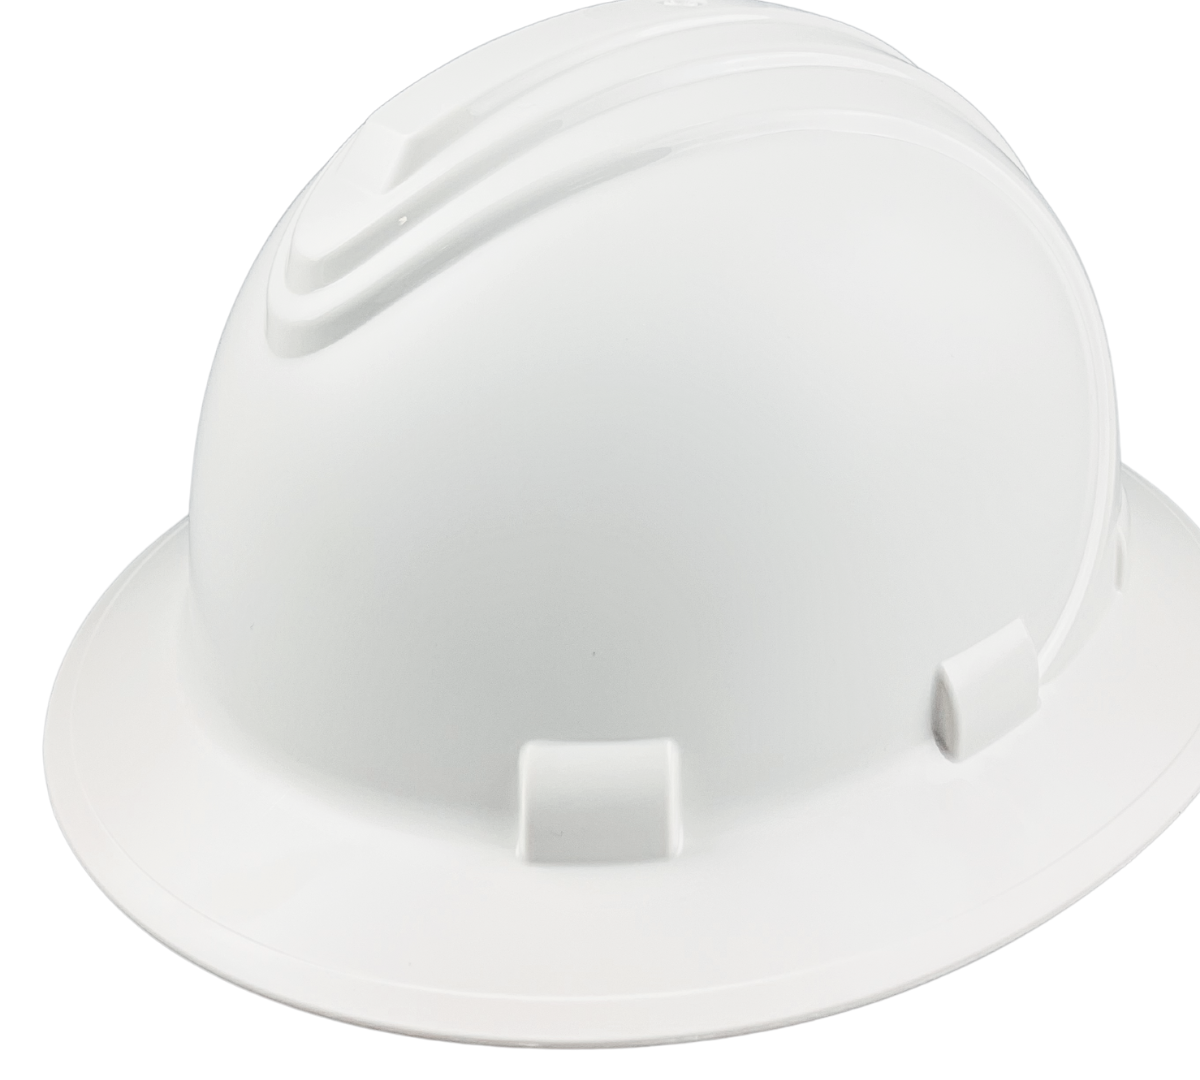 White Industrial Safety Helmet